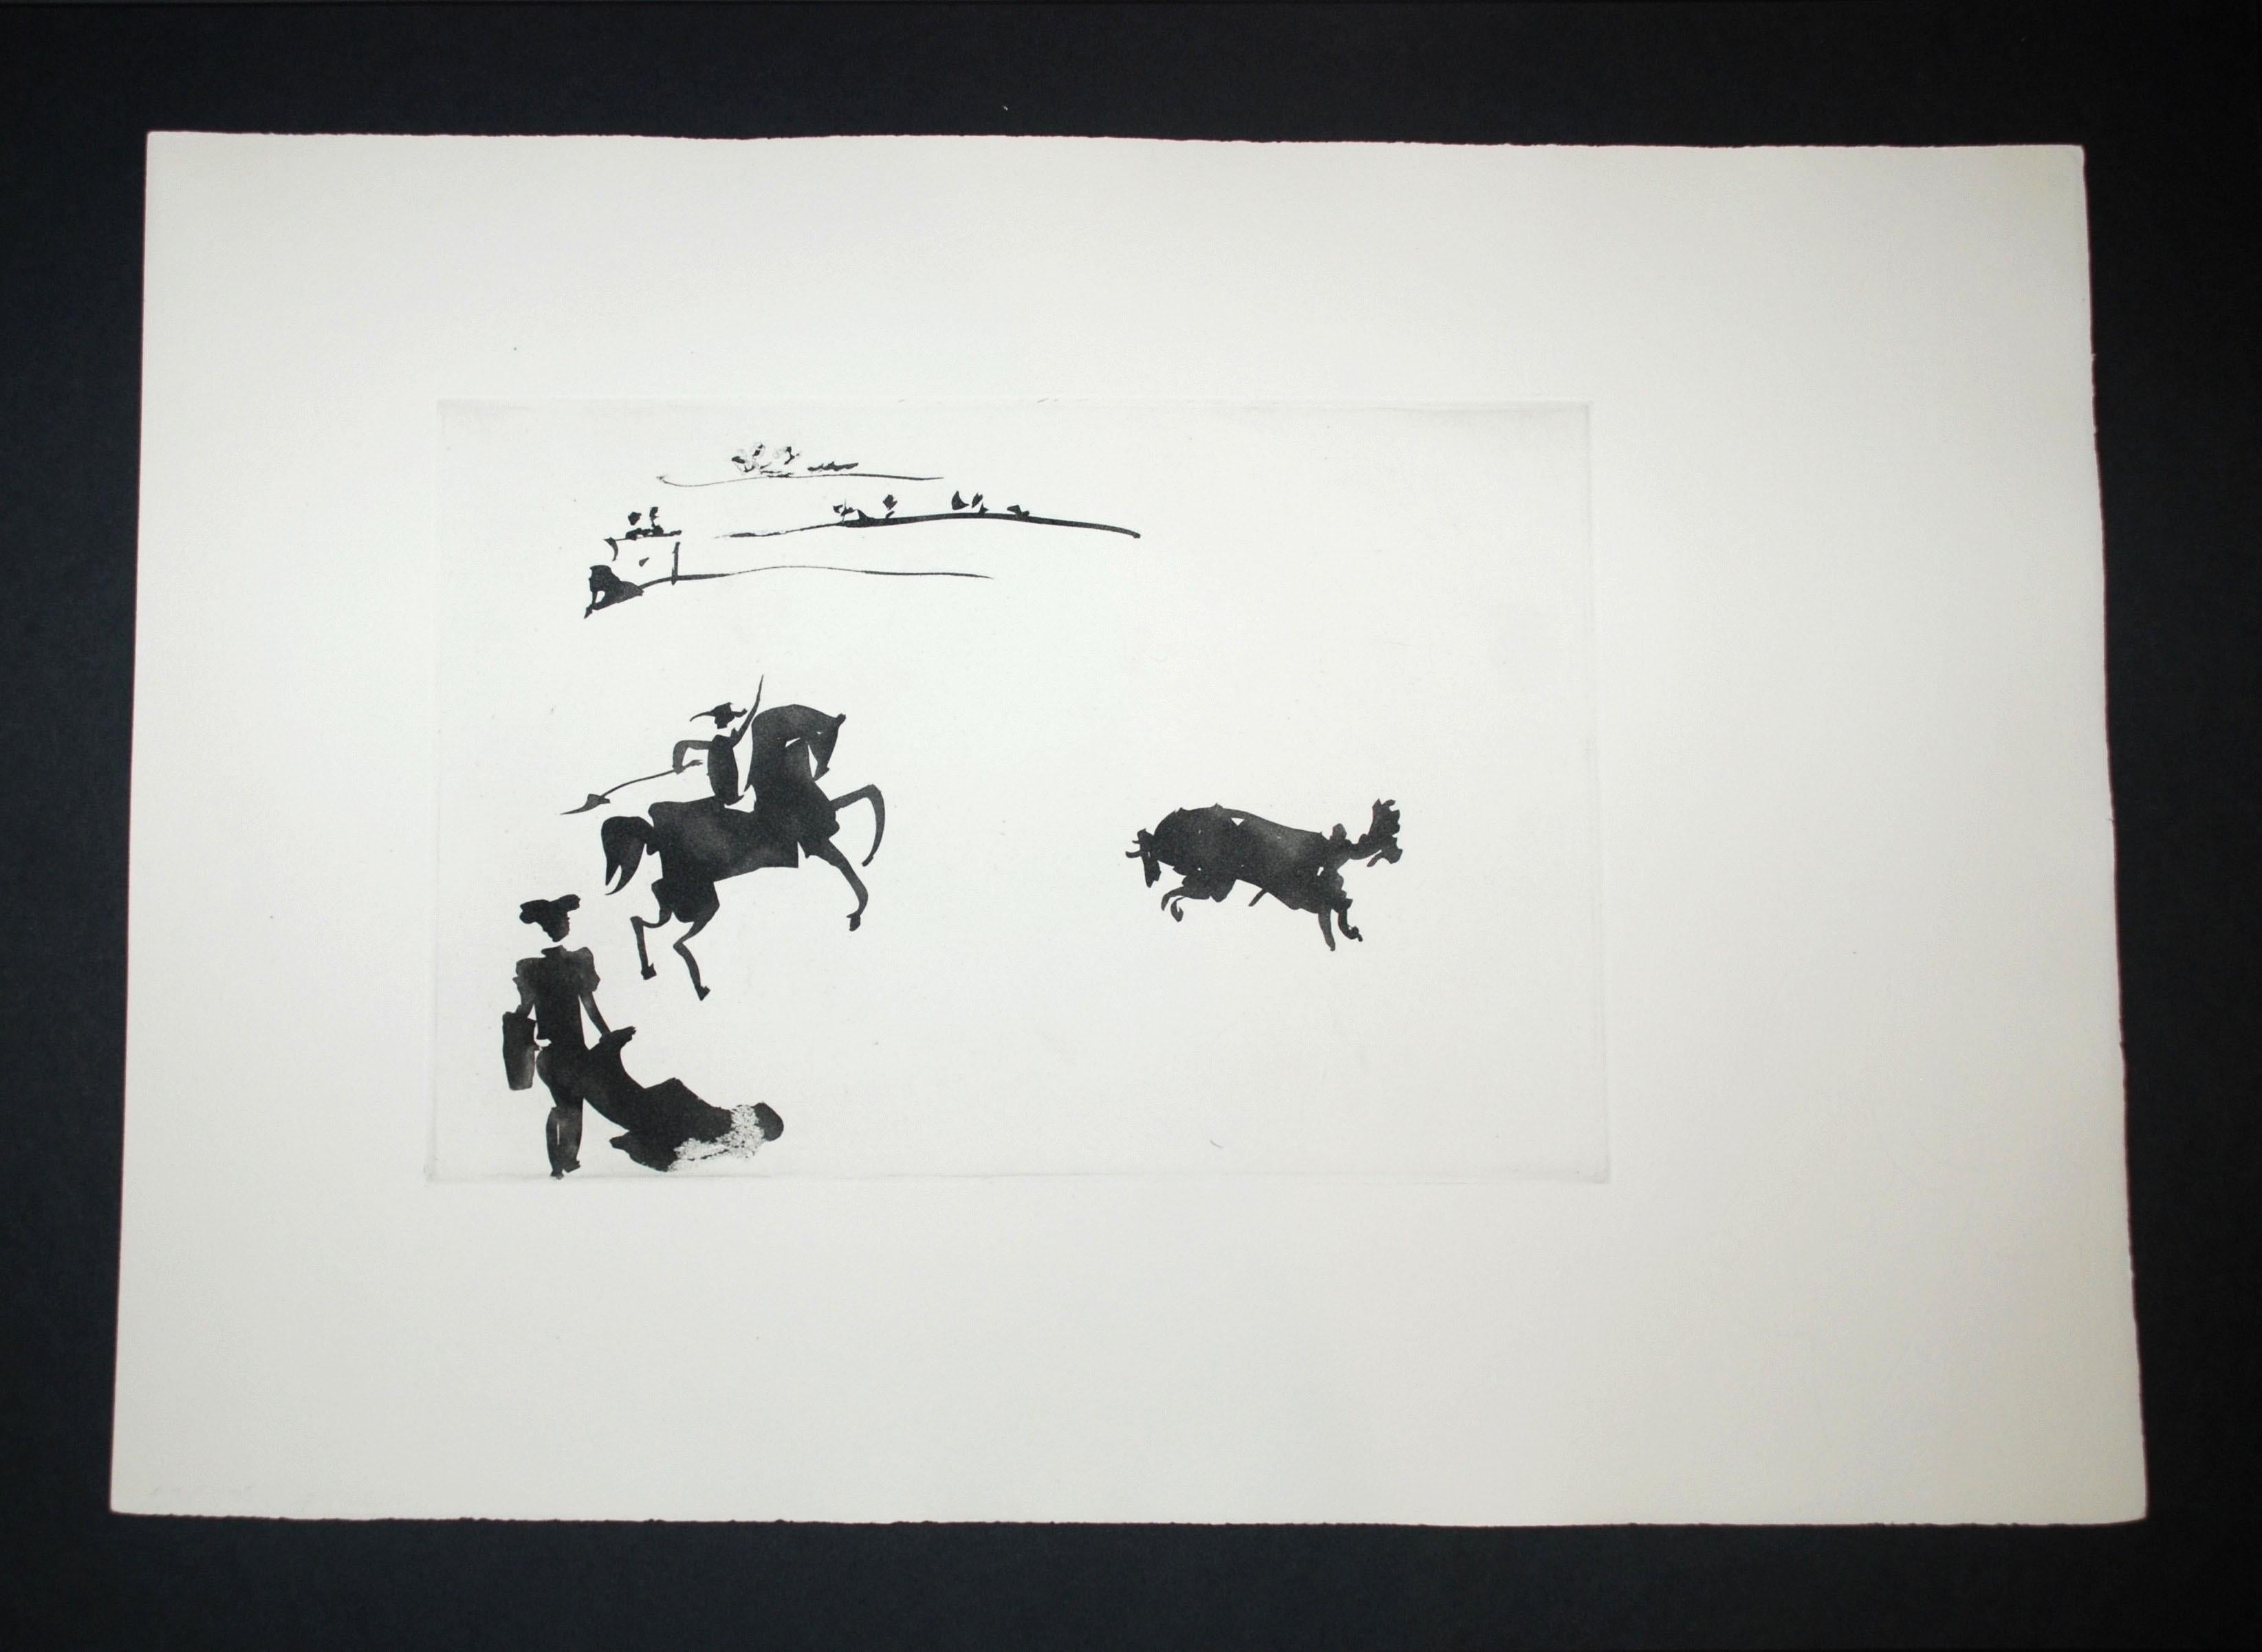 Citando al Toro con el Rejon (Summoning the Bull with the Spear) - Print by Pablo Picasso